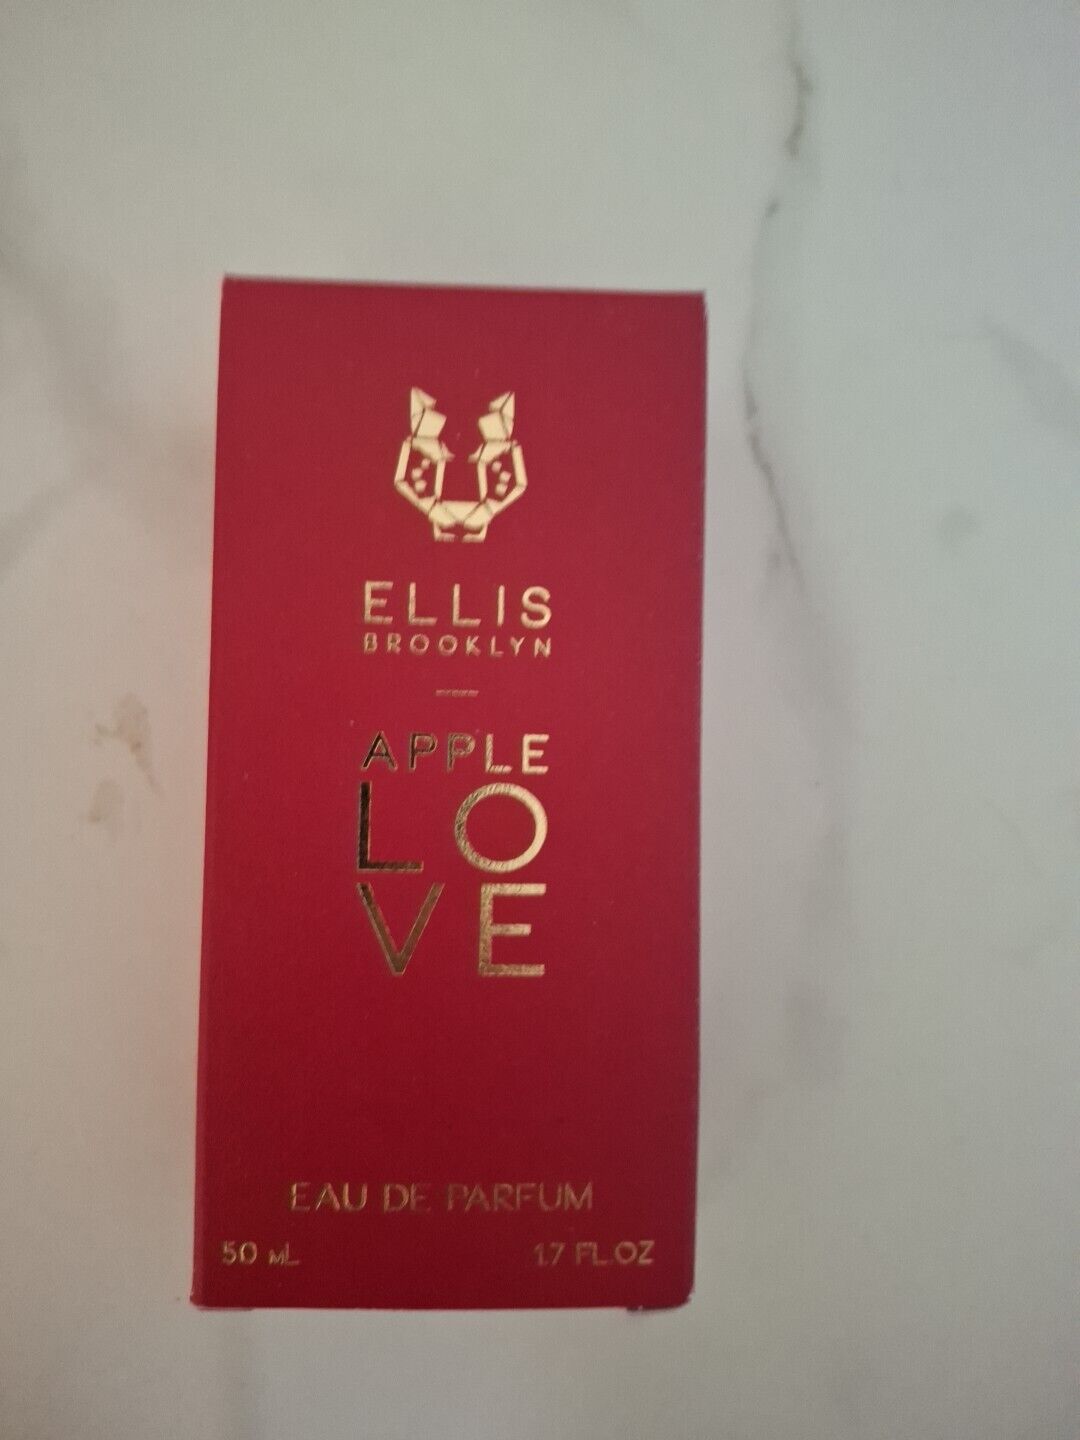 Ellis Brooklyn Apple LOVE Eau De Parfum 1.7 oz. 50 Ml. About 95% Full Authentic.